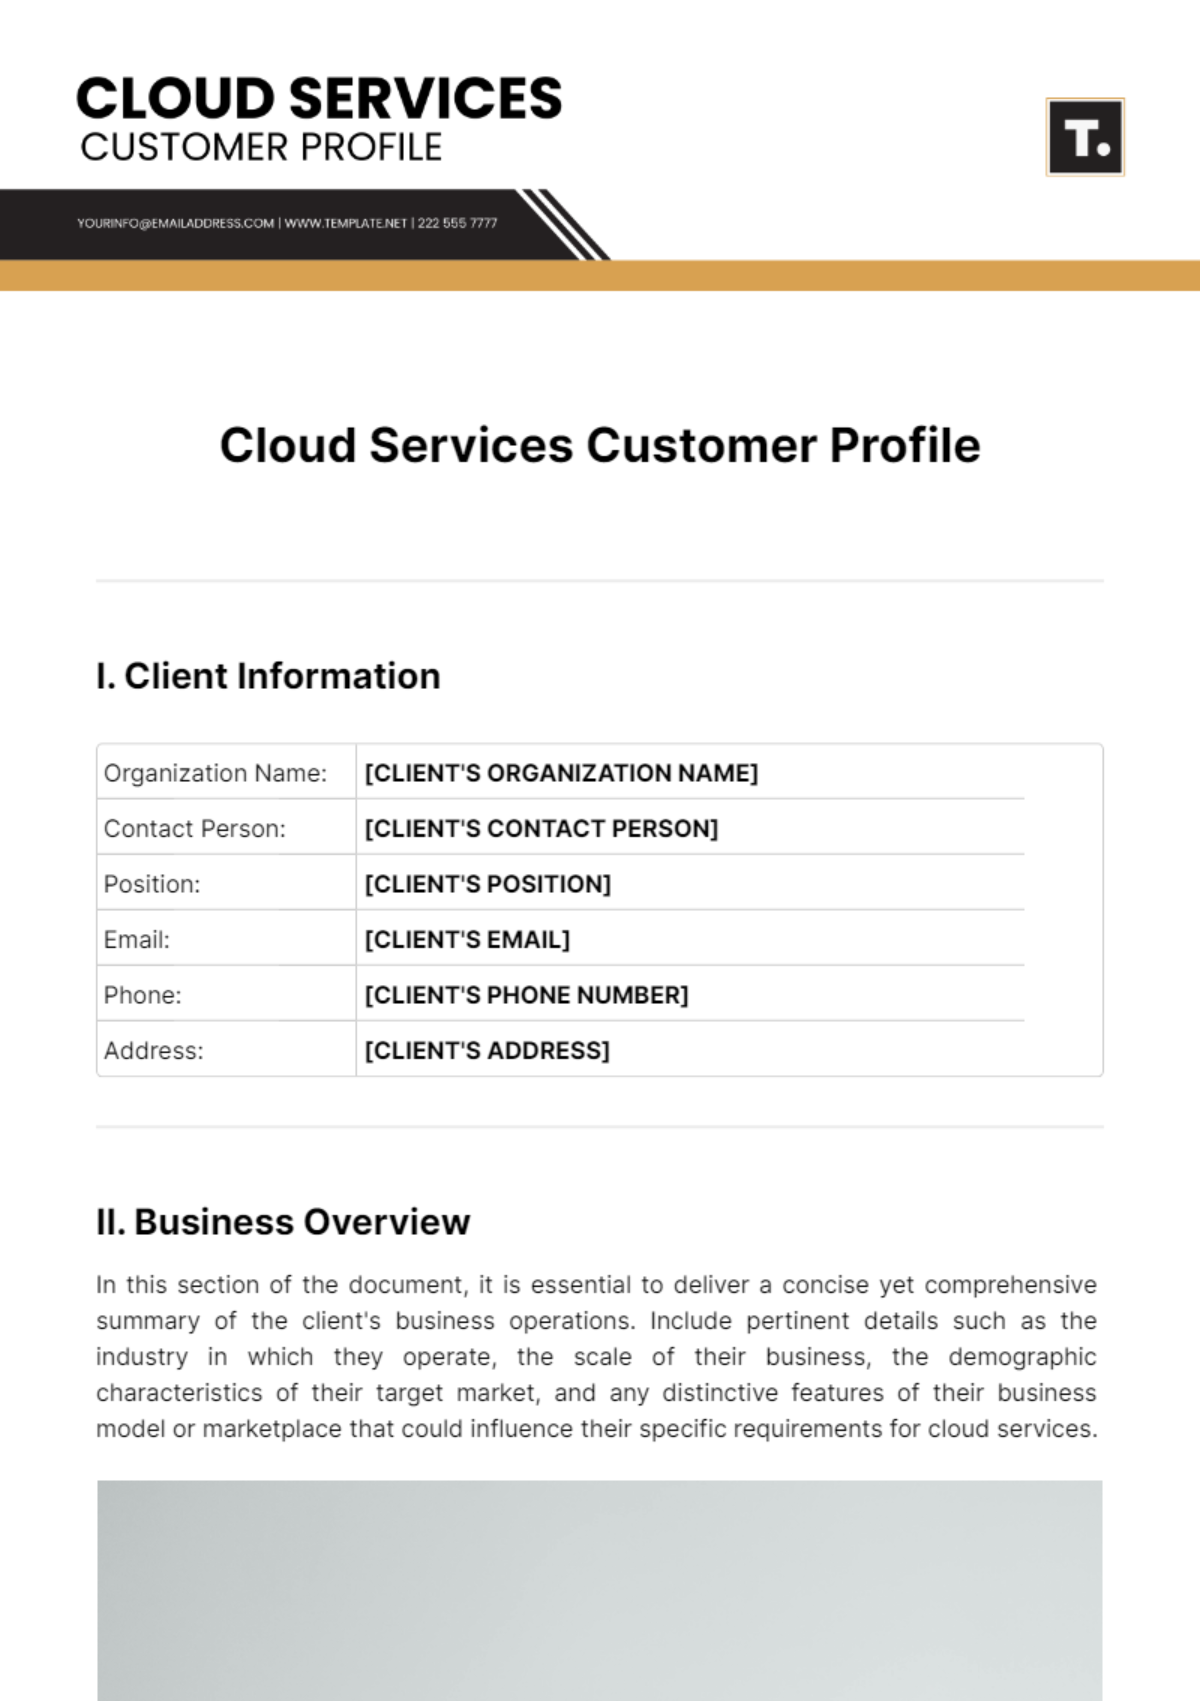 Cloud Services Customer Profile Template